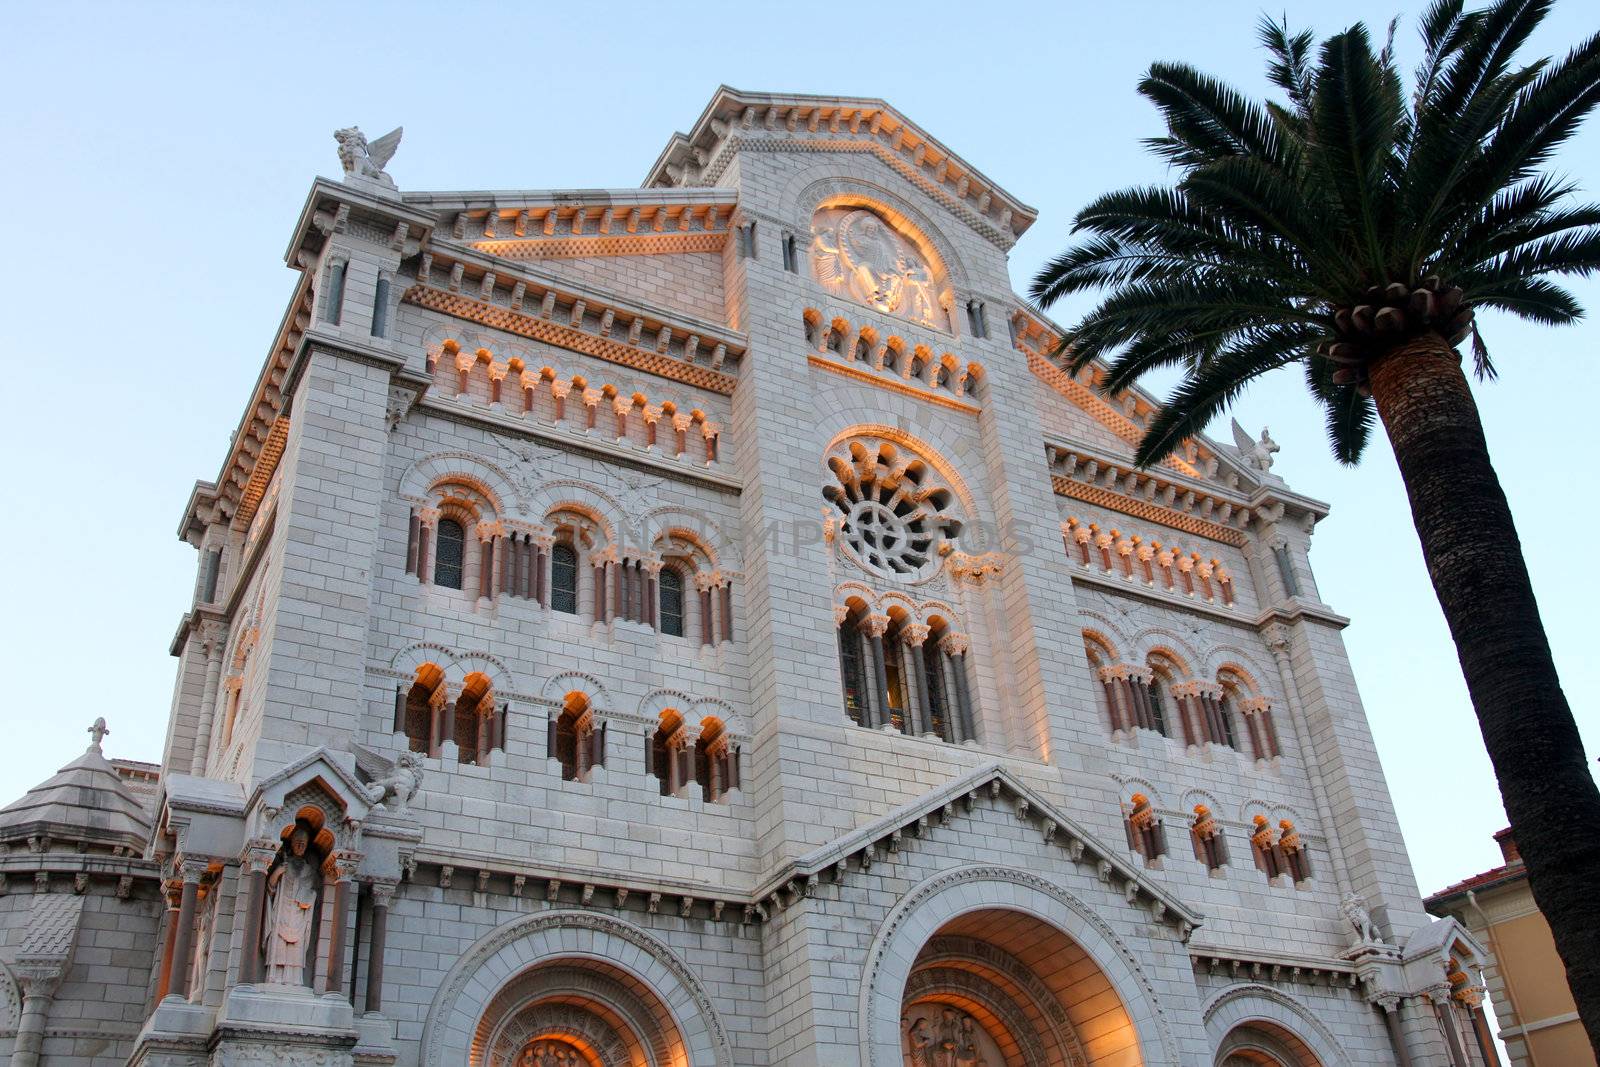 View of Catedral del Principado de Monaco